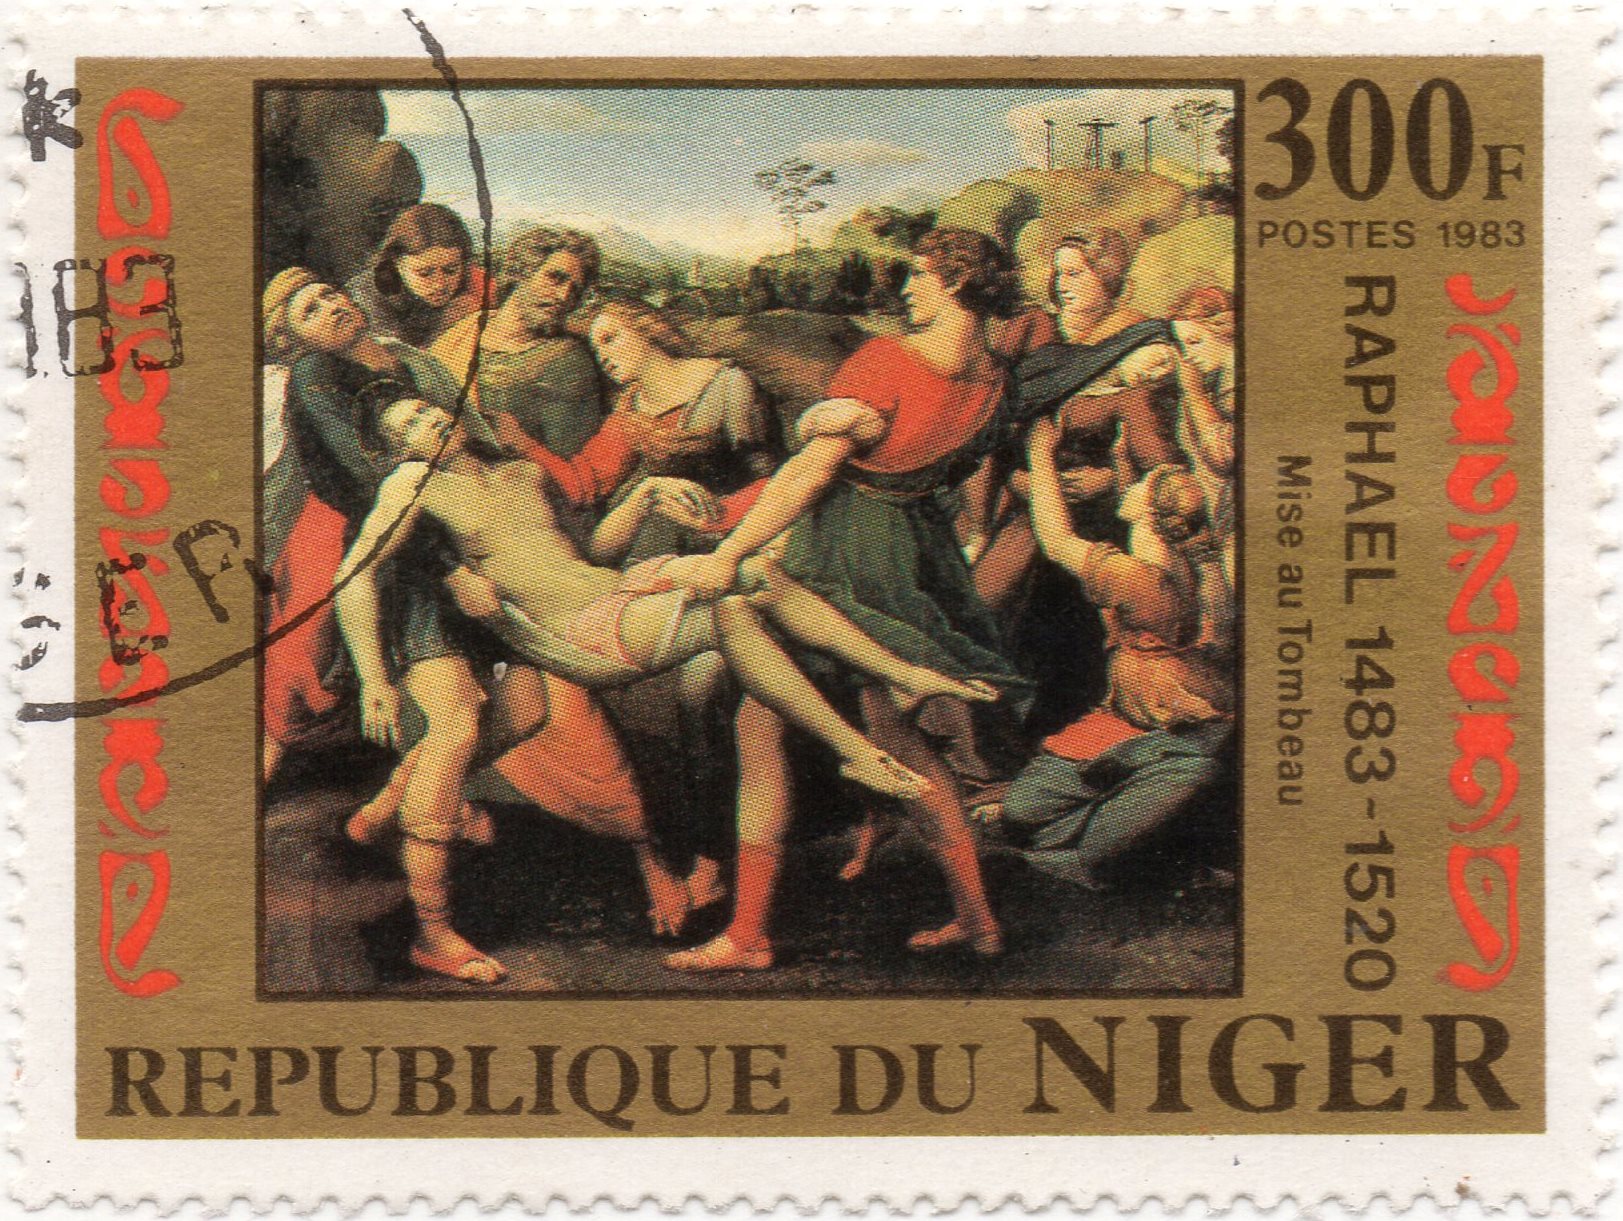 nft #6 Entombment Pala Baglione Raphael 1483 - 1520 Republic of Niger 300 f. postes 1983